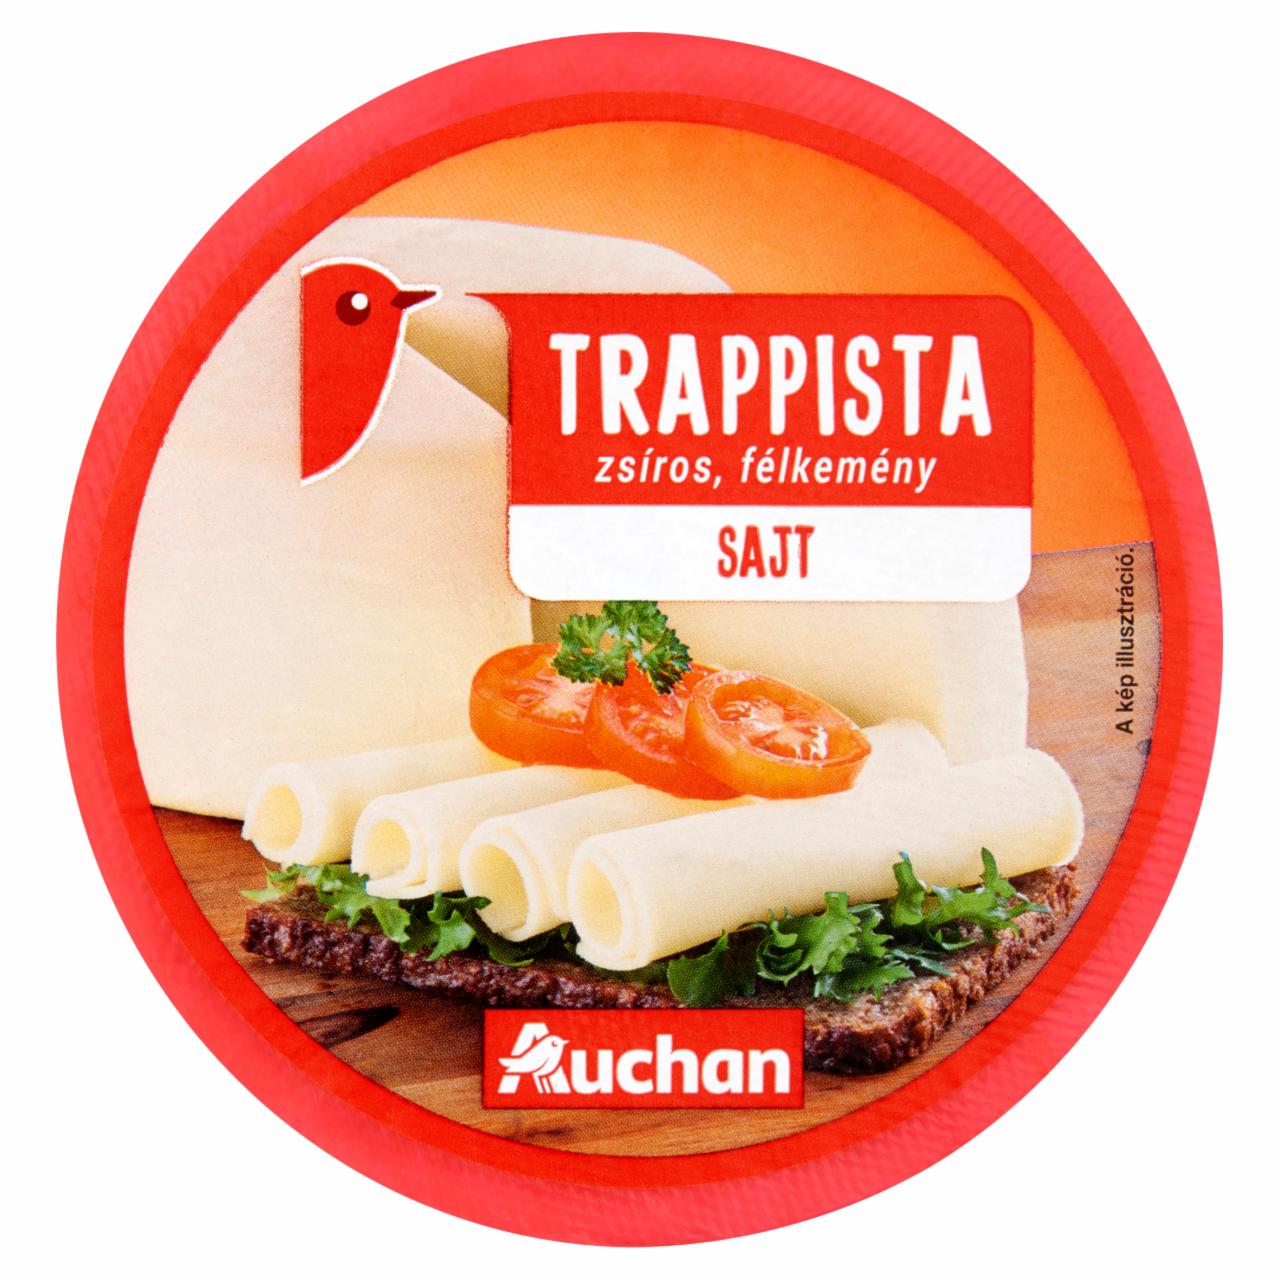 Képek - Auchan zsíros, félkemény trappista sajt